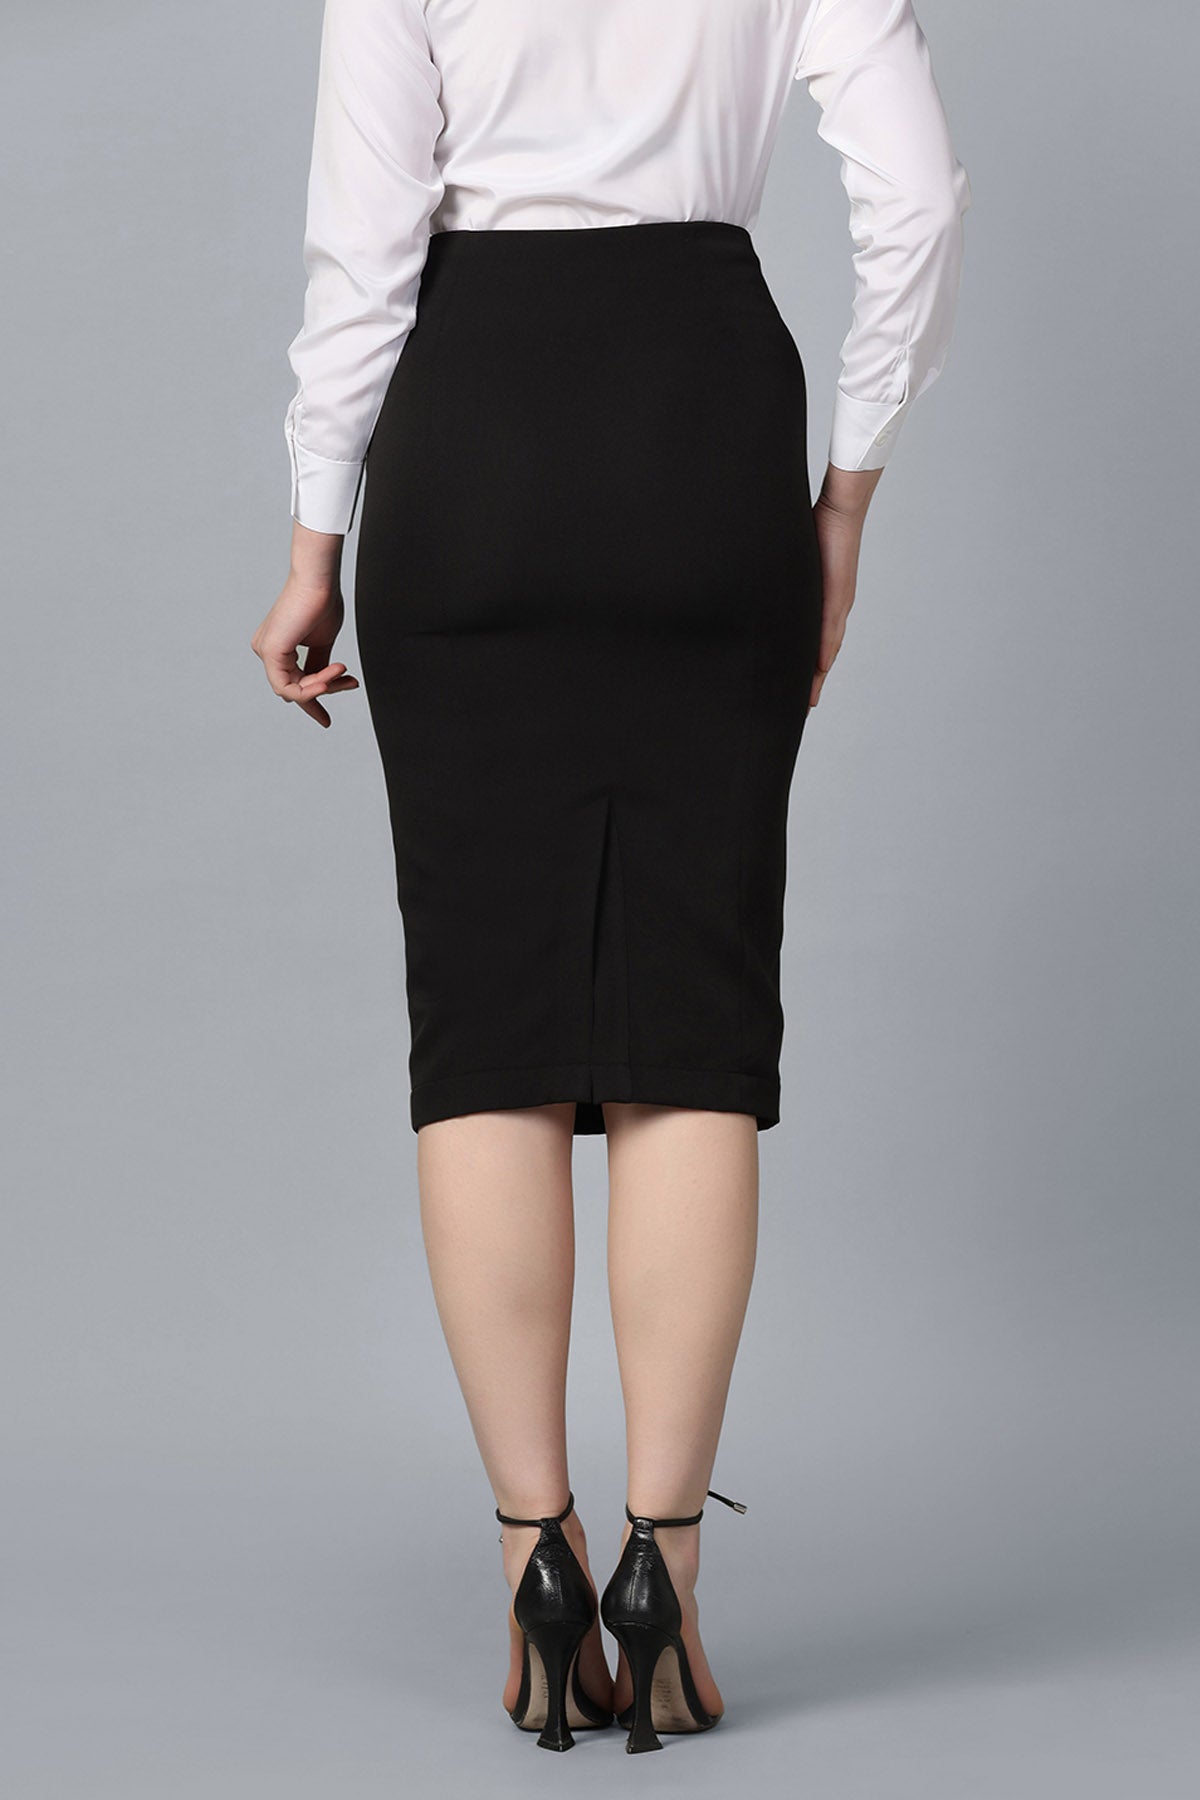 Black Pencil Midwaist Skirt